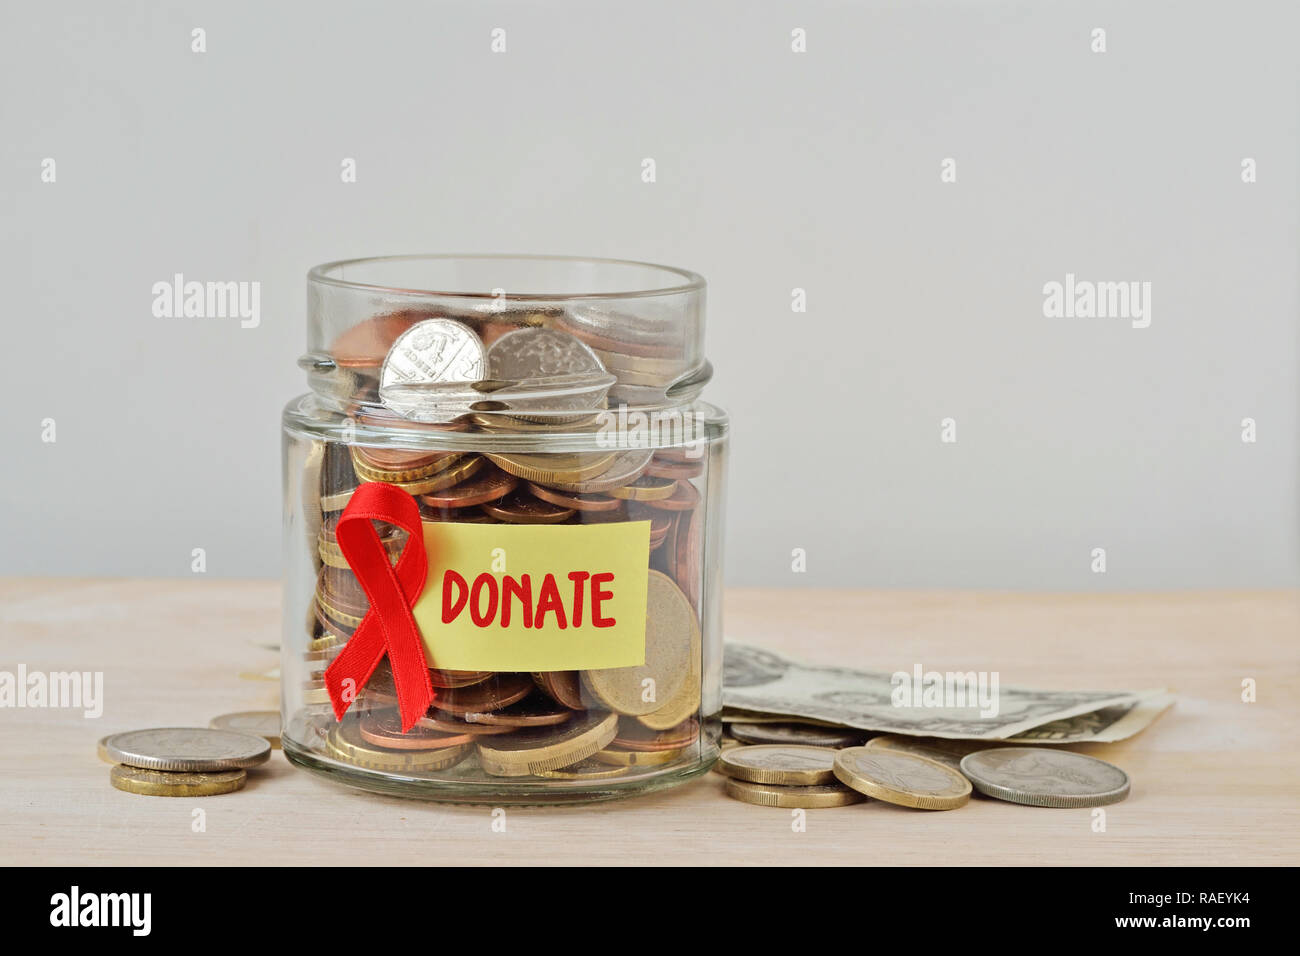 Geld Glas voll von Münzen mit rotem Band und Label Spenden - die AIDS-Hilfe und Forschung Fonds Konzept Stockfoto